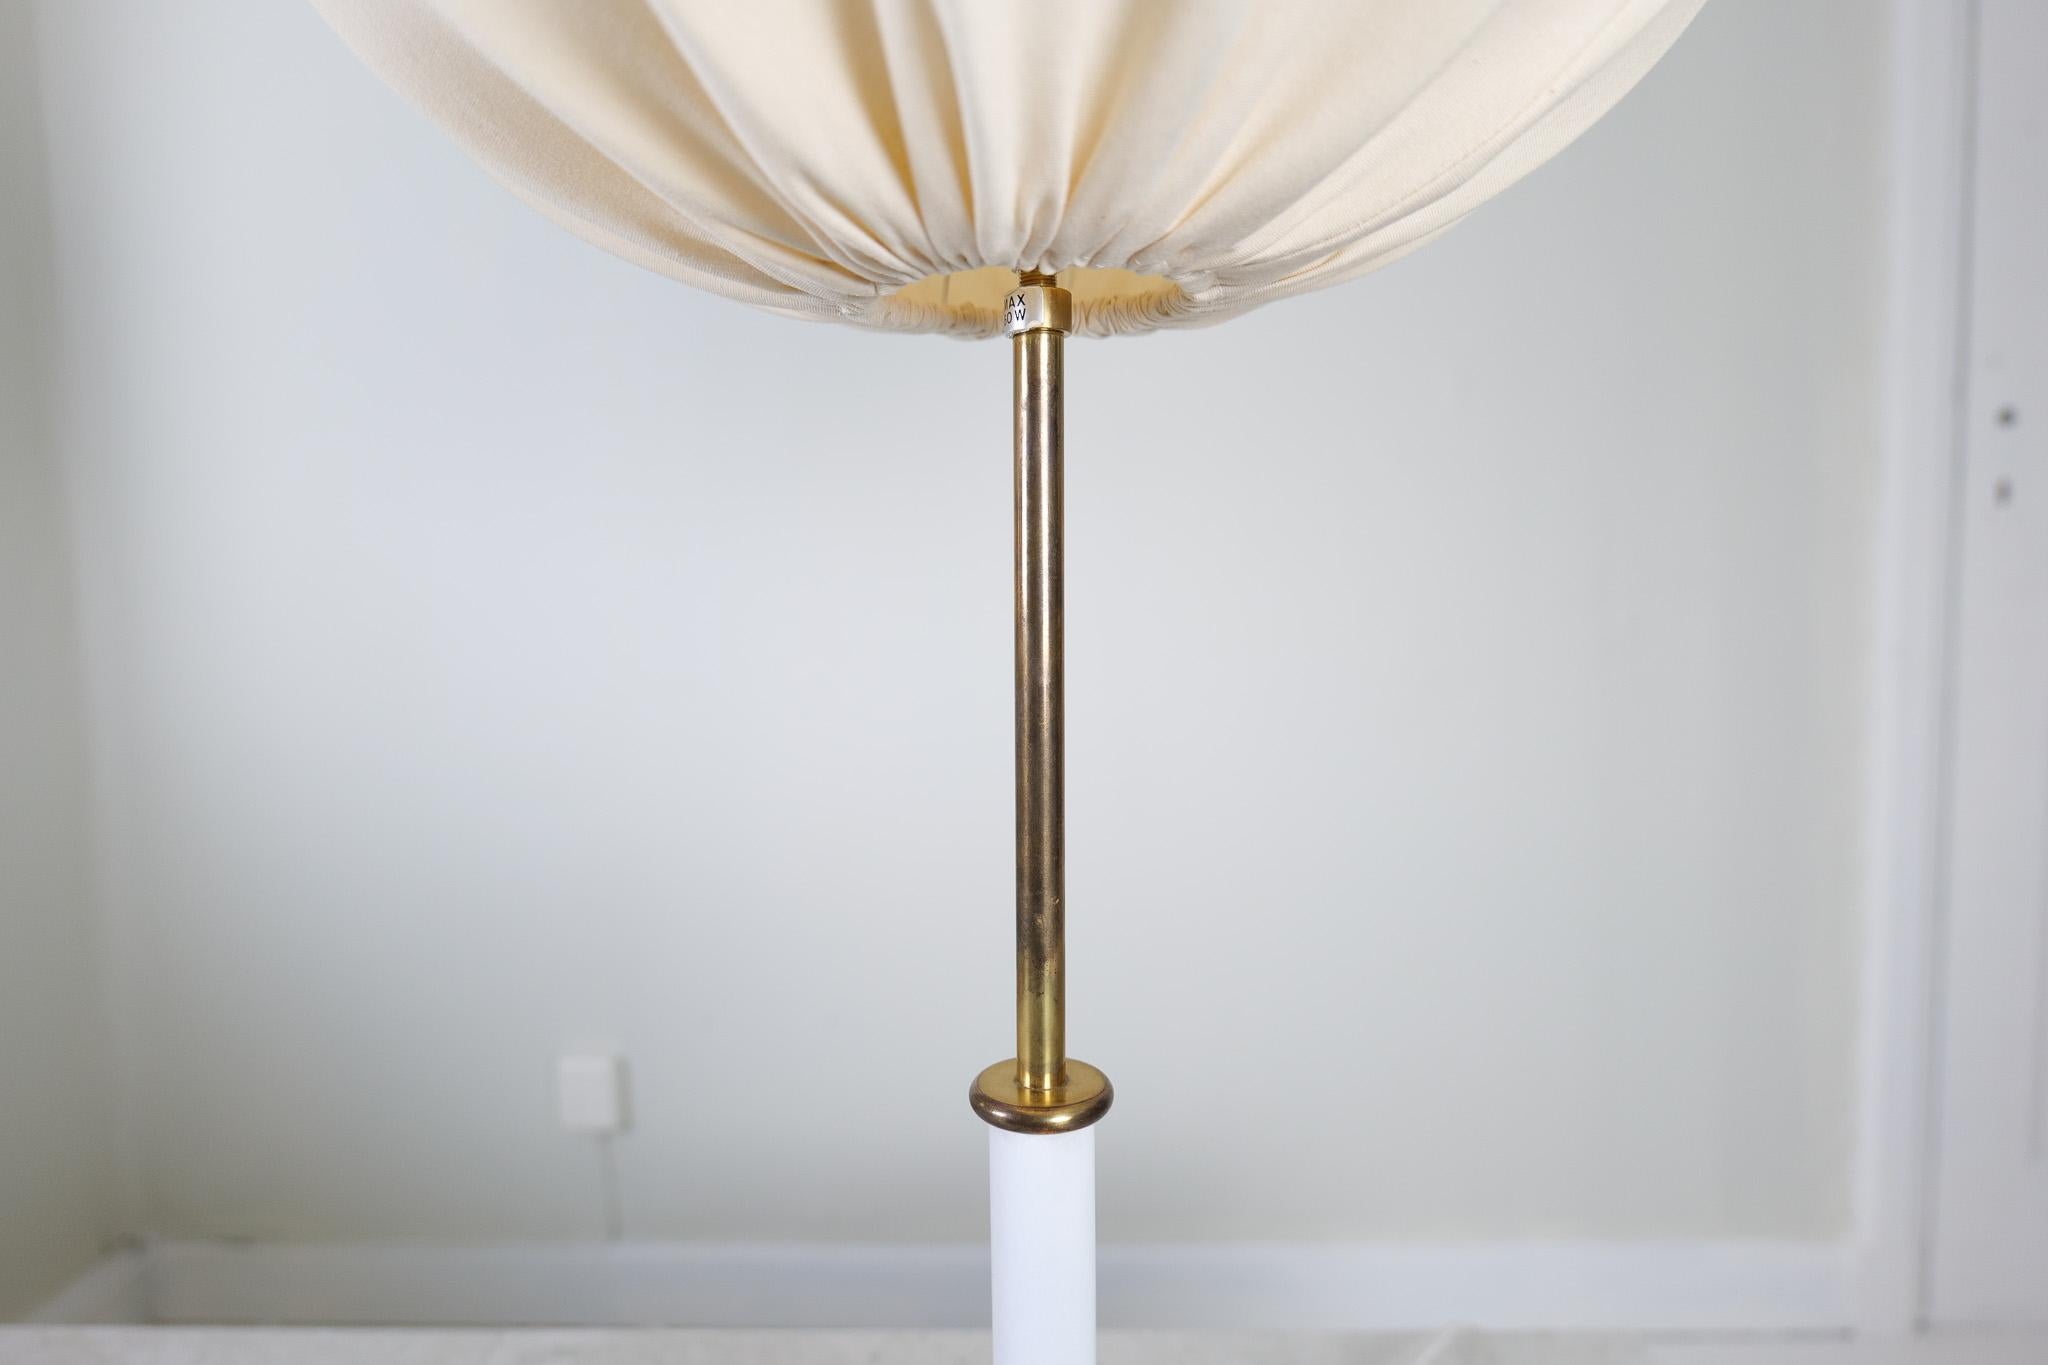 Mid-20th Century Midcentury Modern Table Lamps Model 2466  by Josef Frank , Svenskt Tenn Sweden For Sale